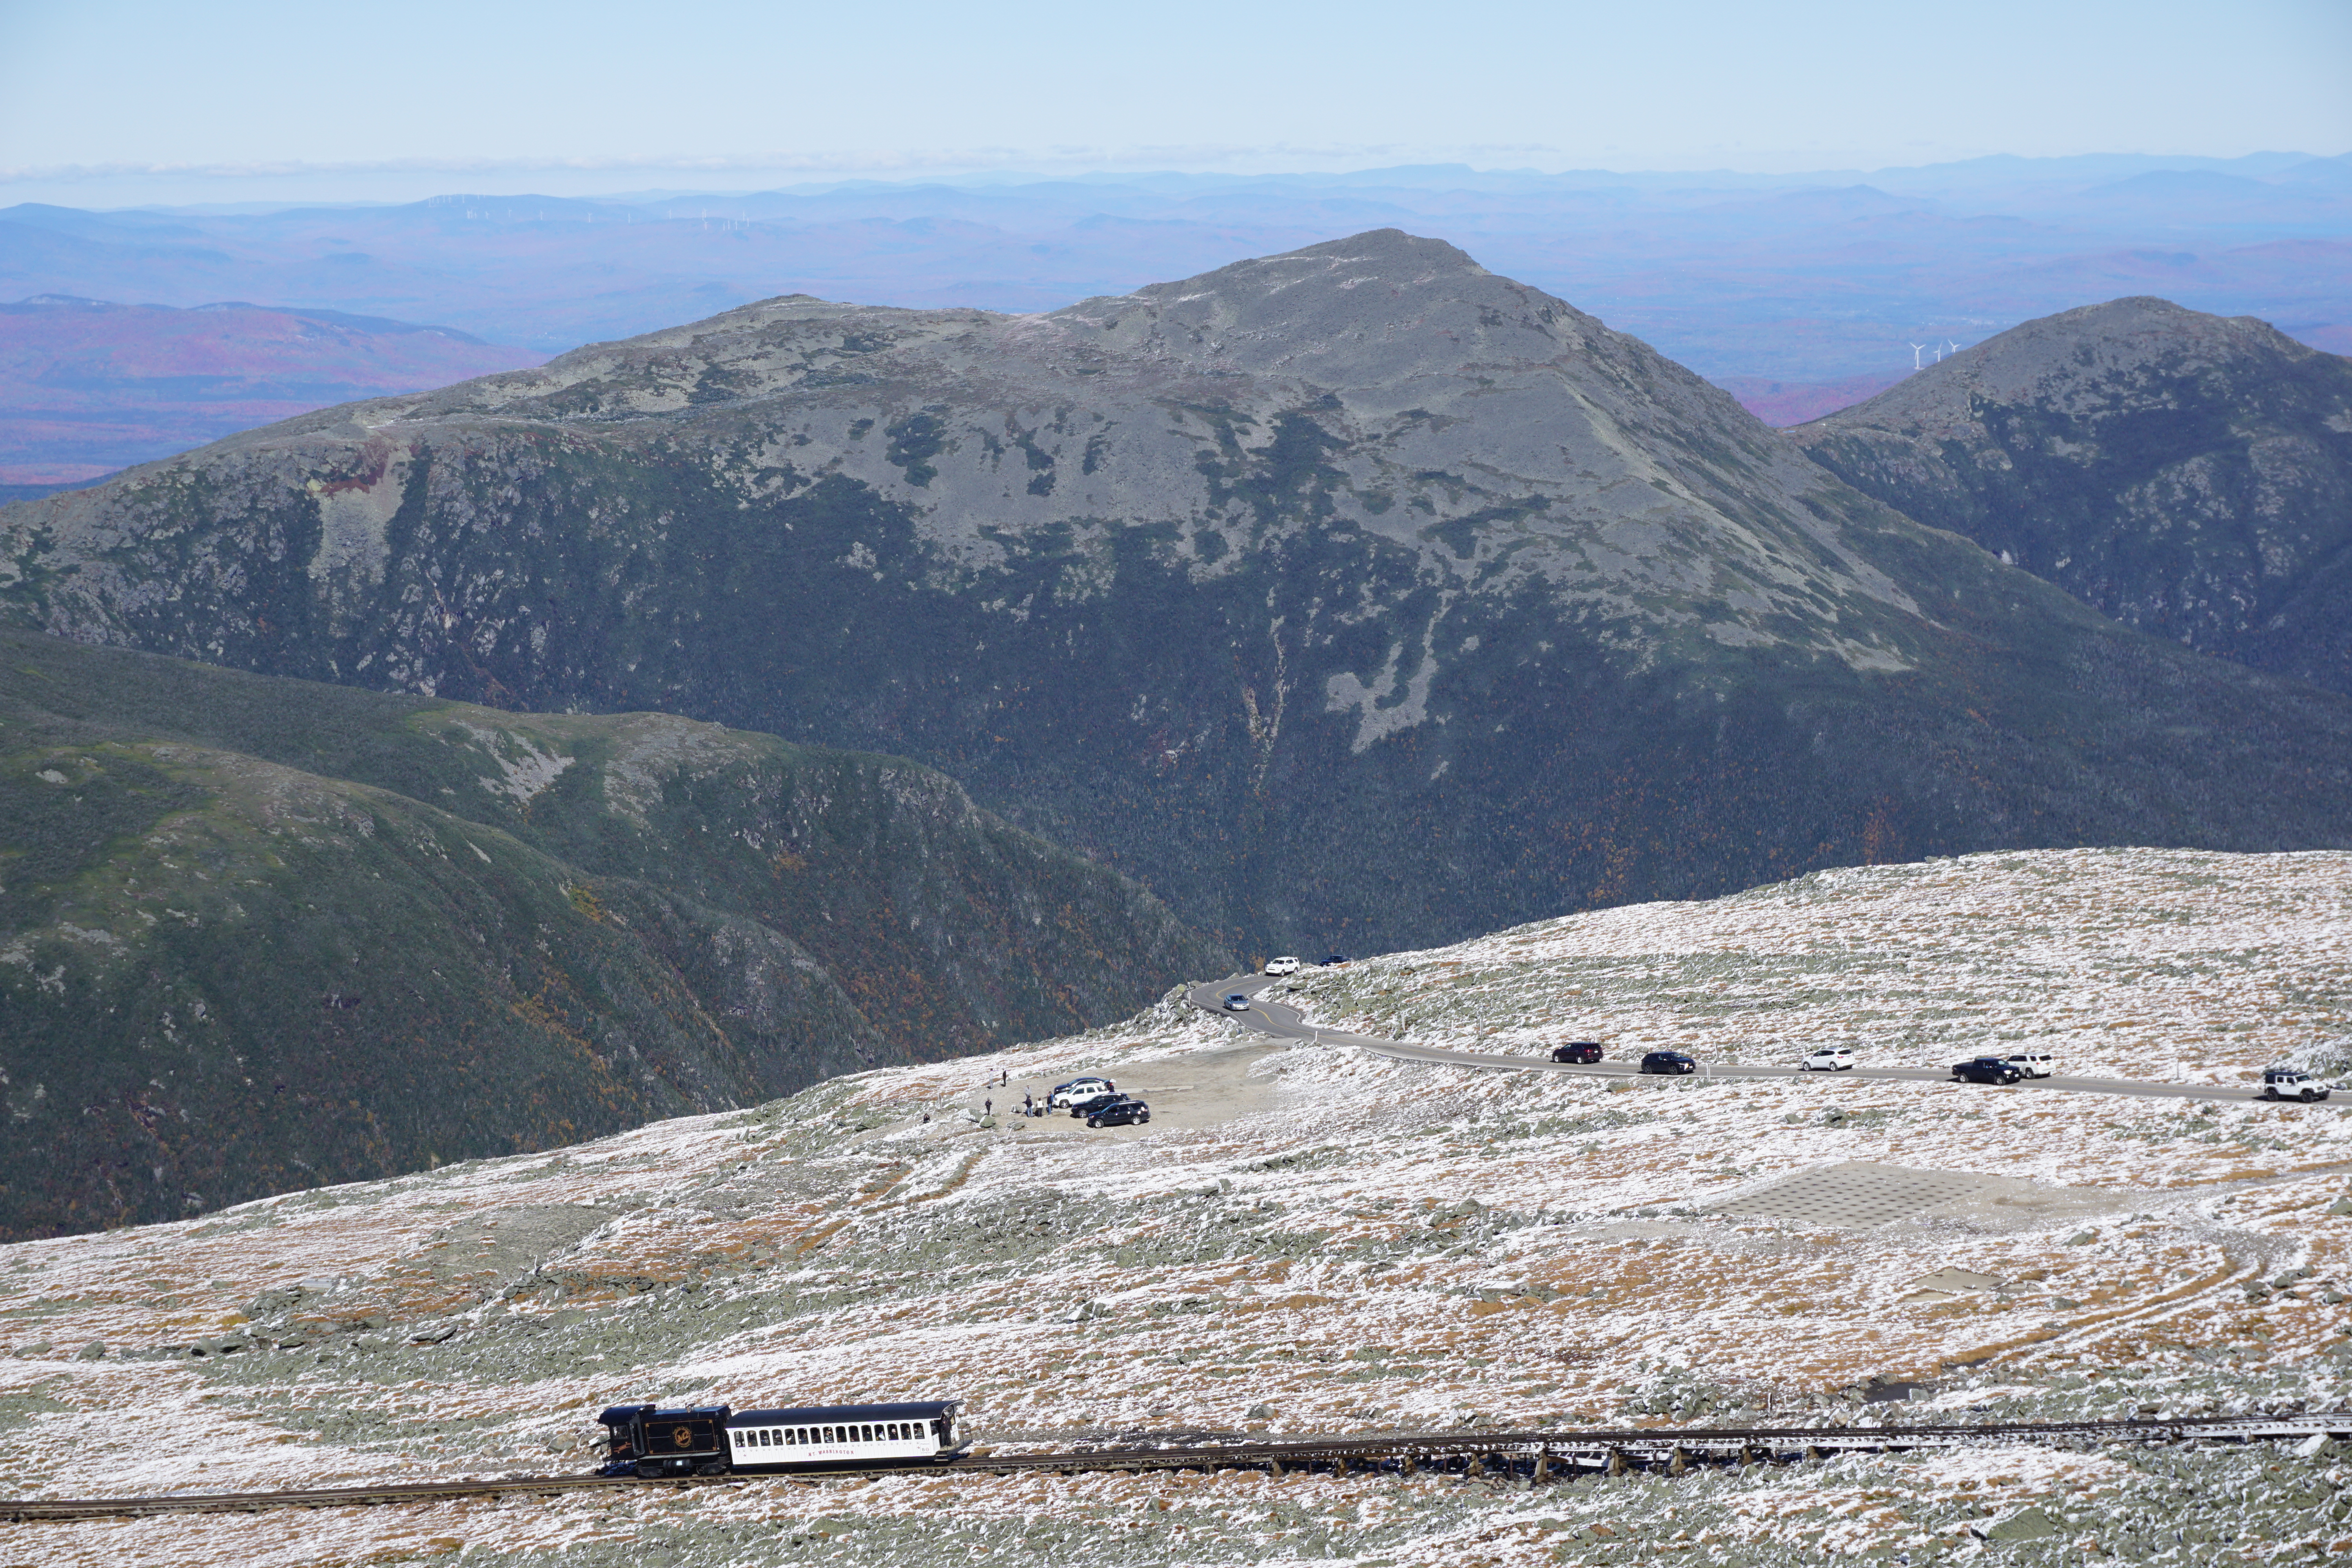 Cog Railway Seen from Mount Washington Summit